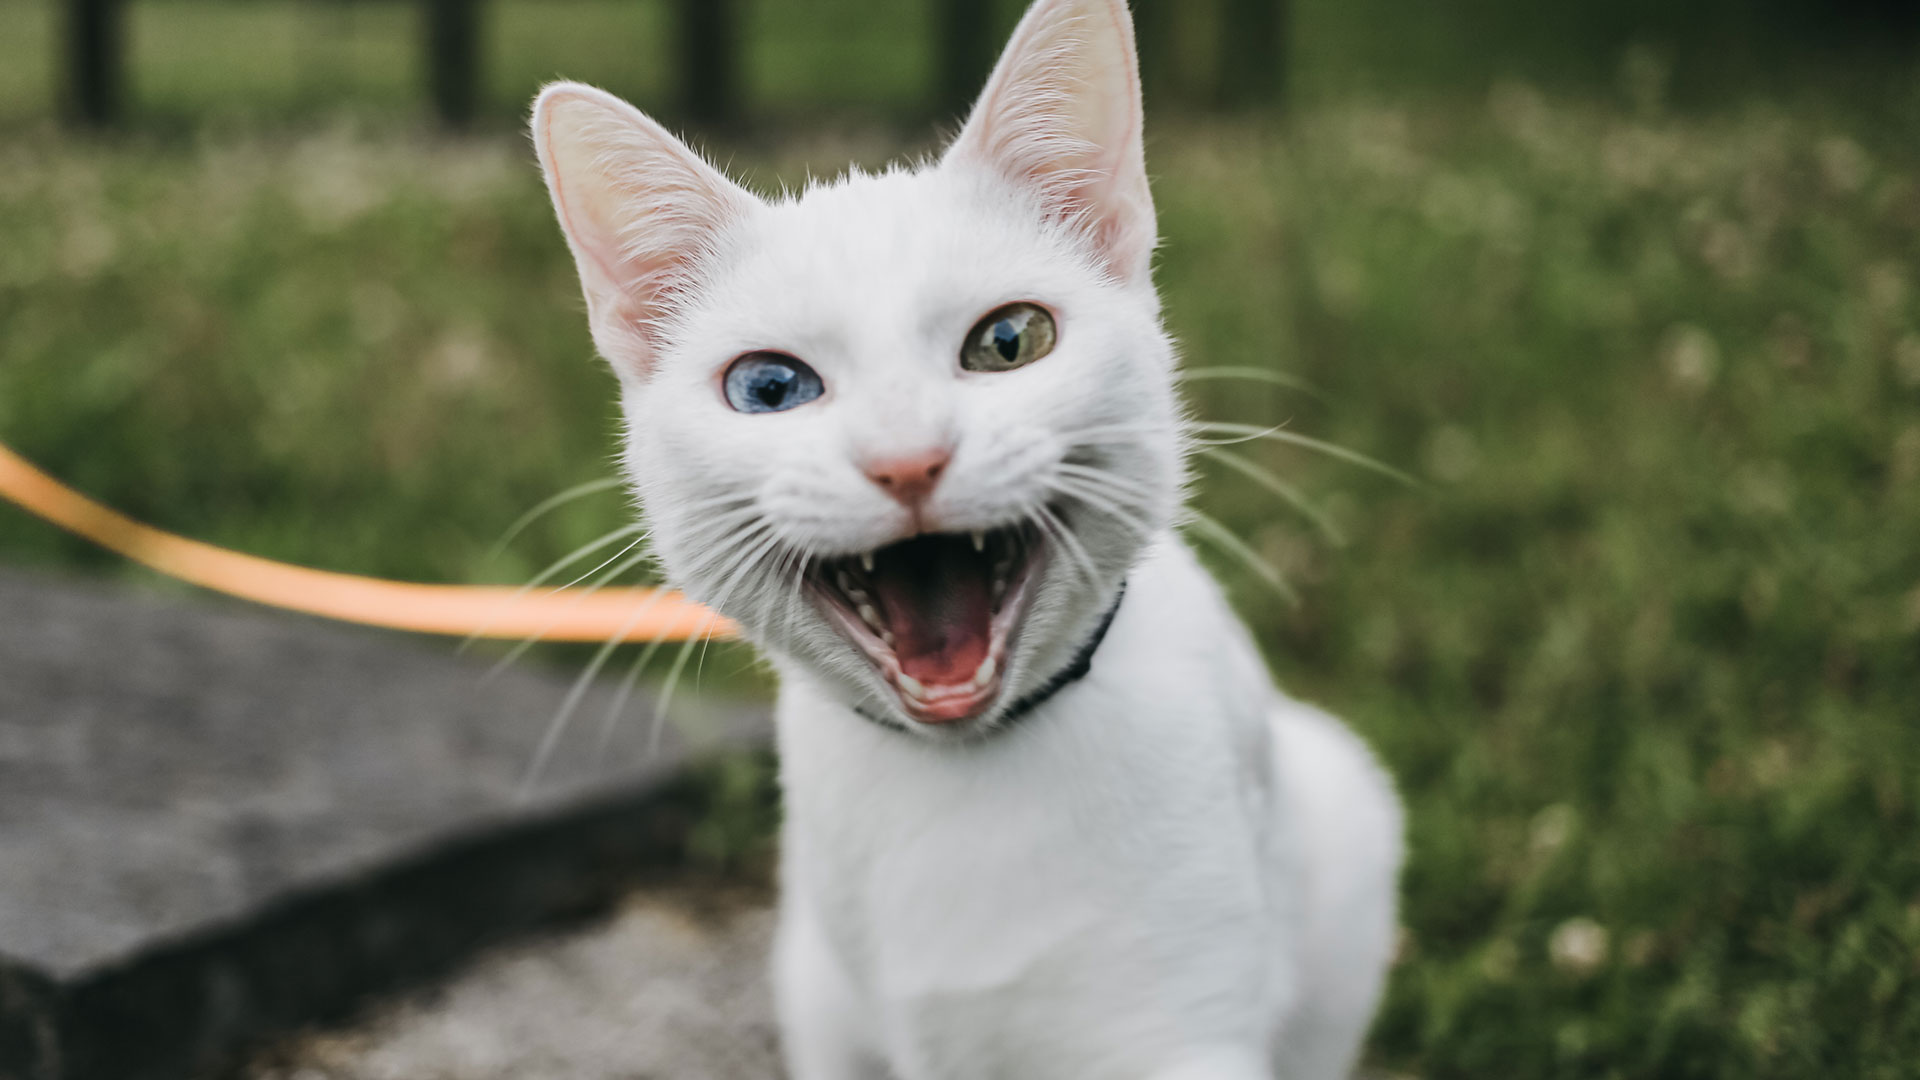 El efecto casi hipnótico que ejerce sobre los gatos, esa reacción a la hierba gatera y su casi adicción compulsiva podría ser explicada evolutivamente por el efecto repelente de insectos (Gettyimages)